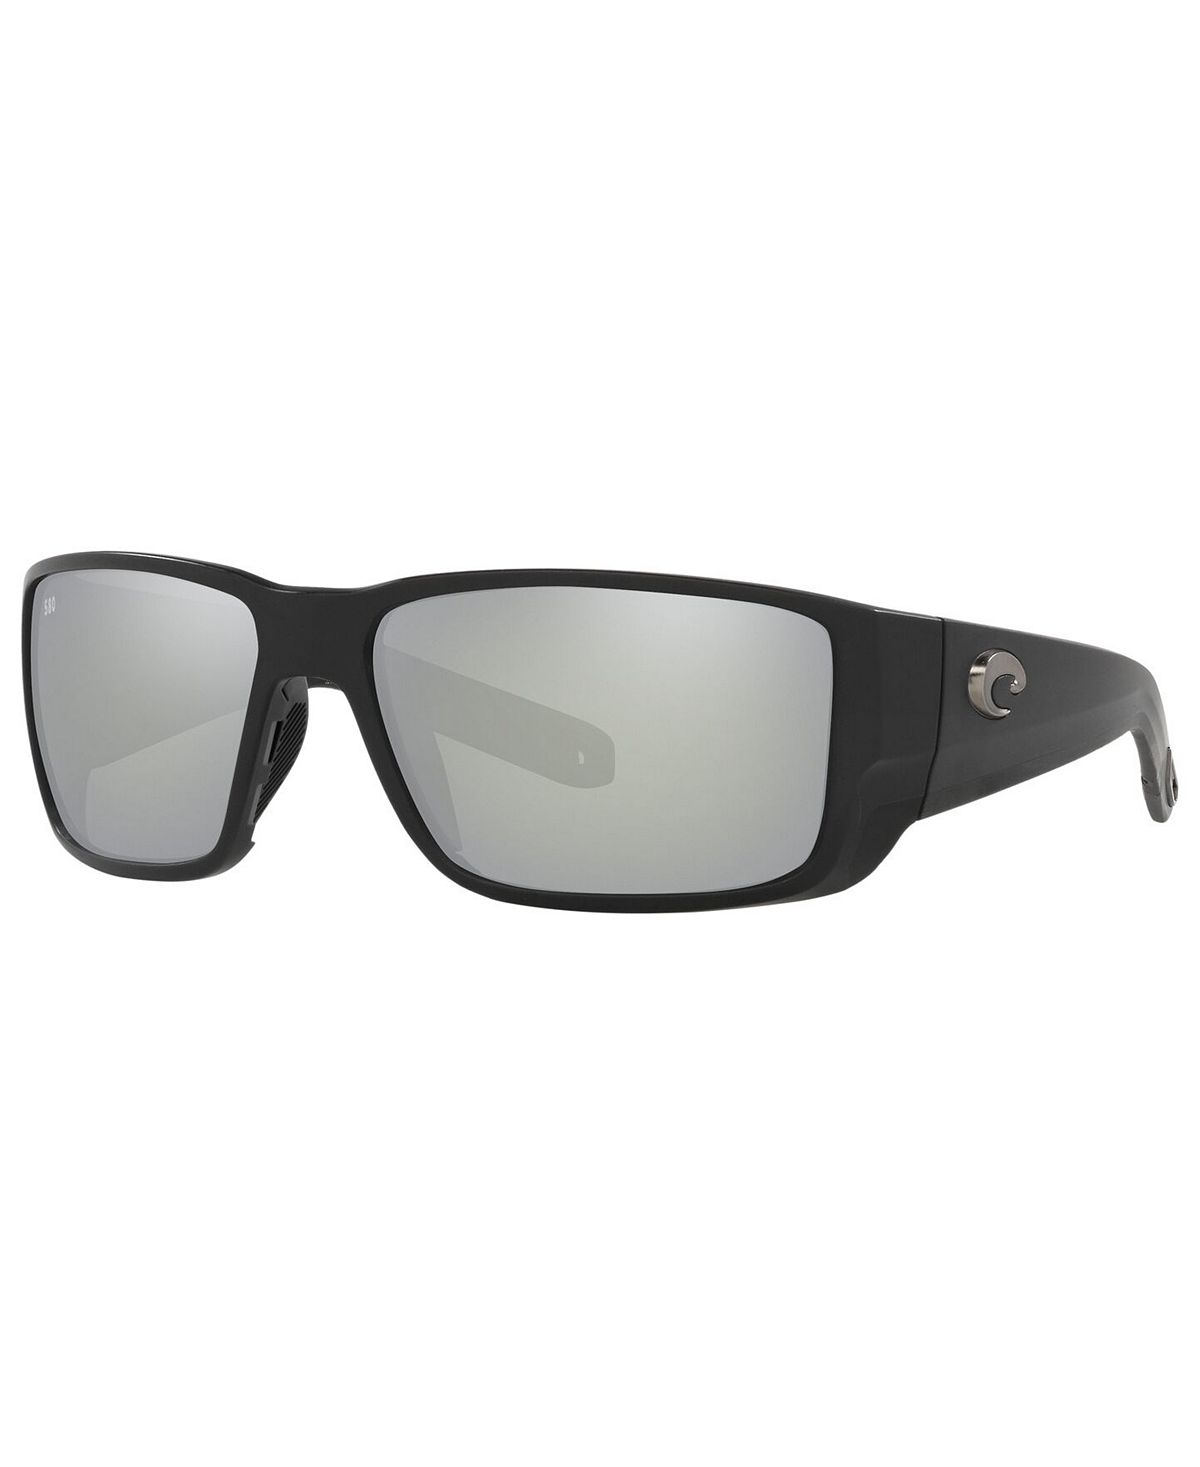 Поляризационные солнцезащитные очки BLACKFIN PRO, 6S9078 60 Costa Del Mar